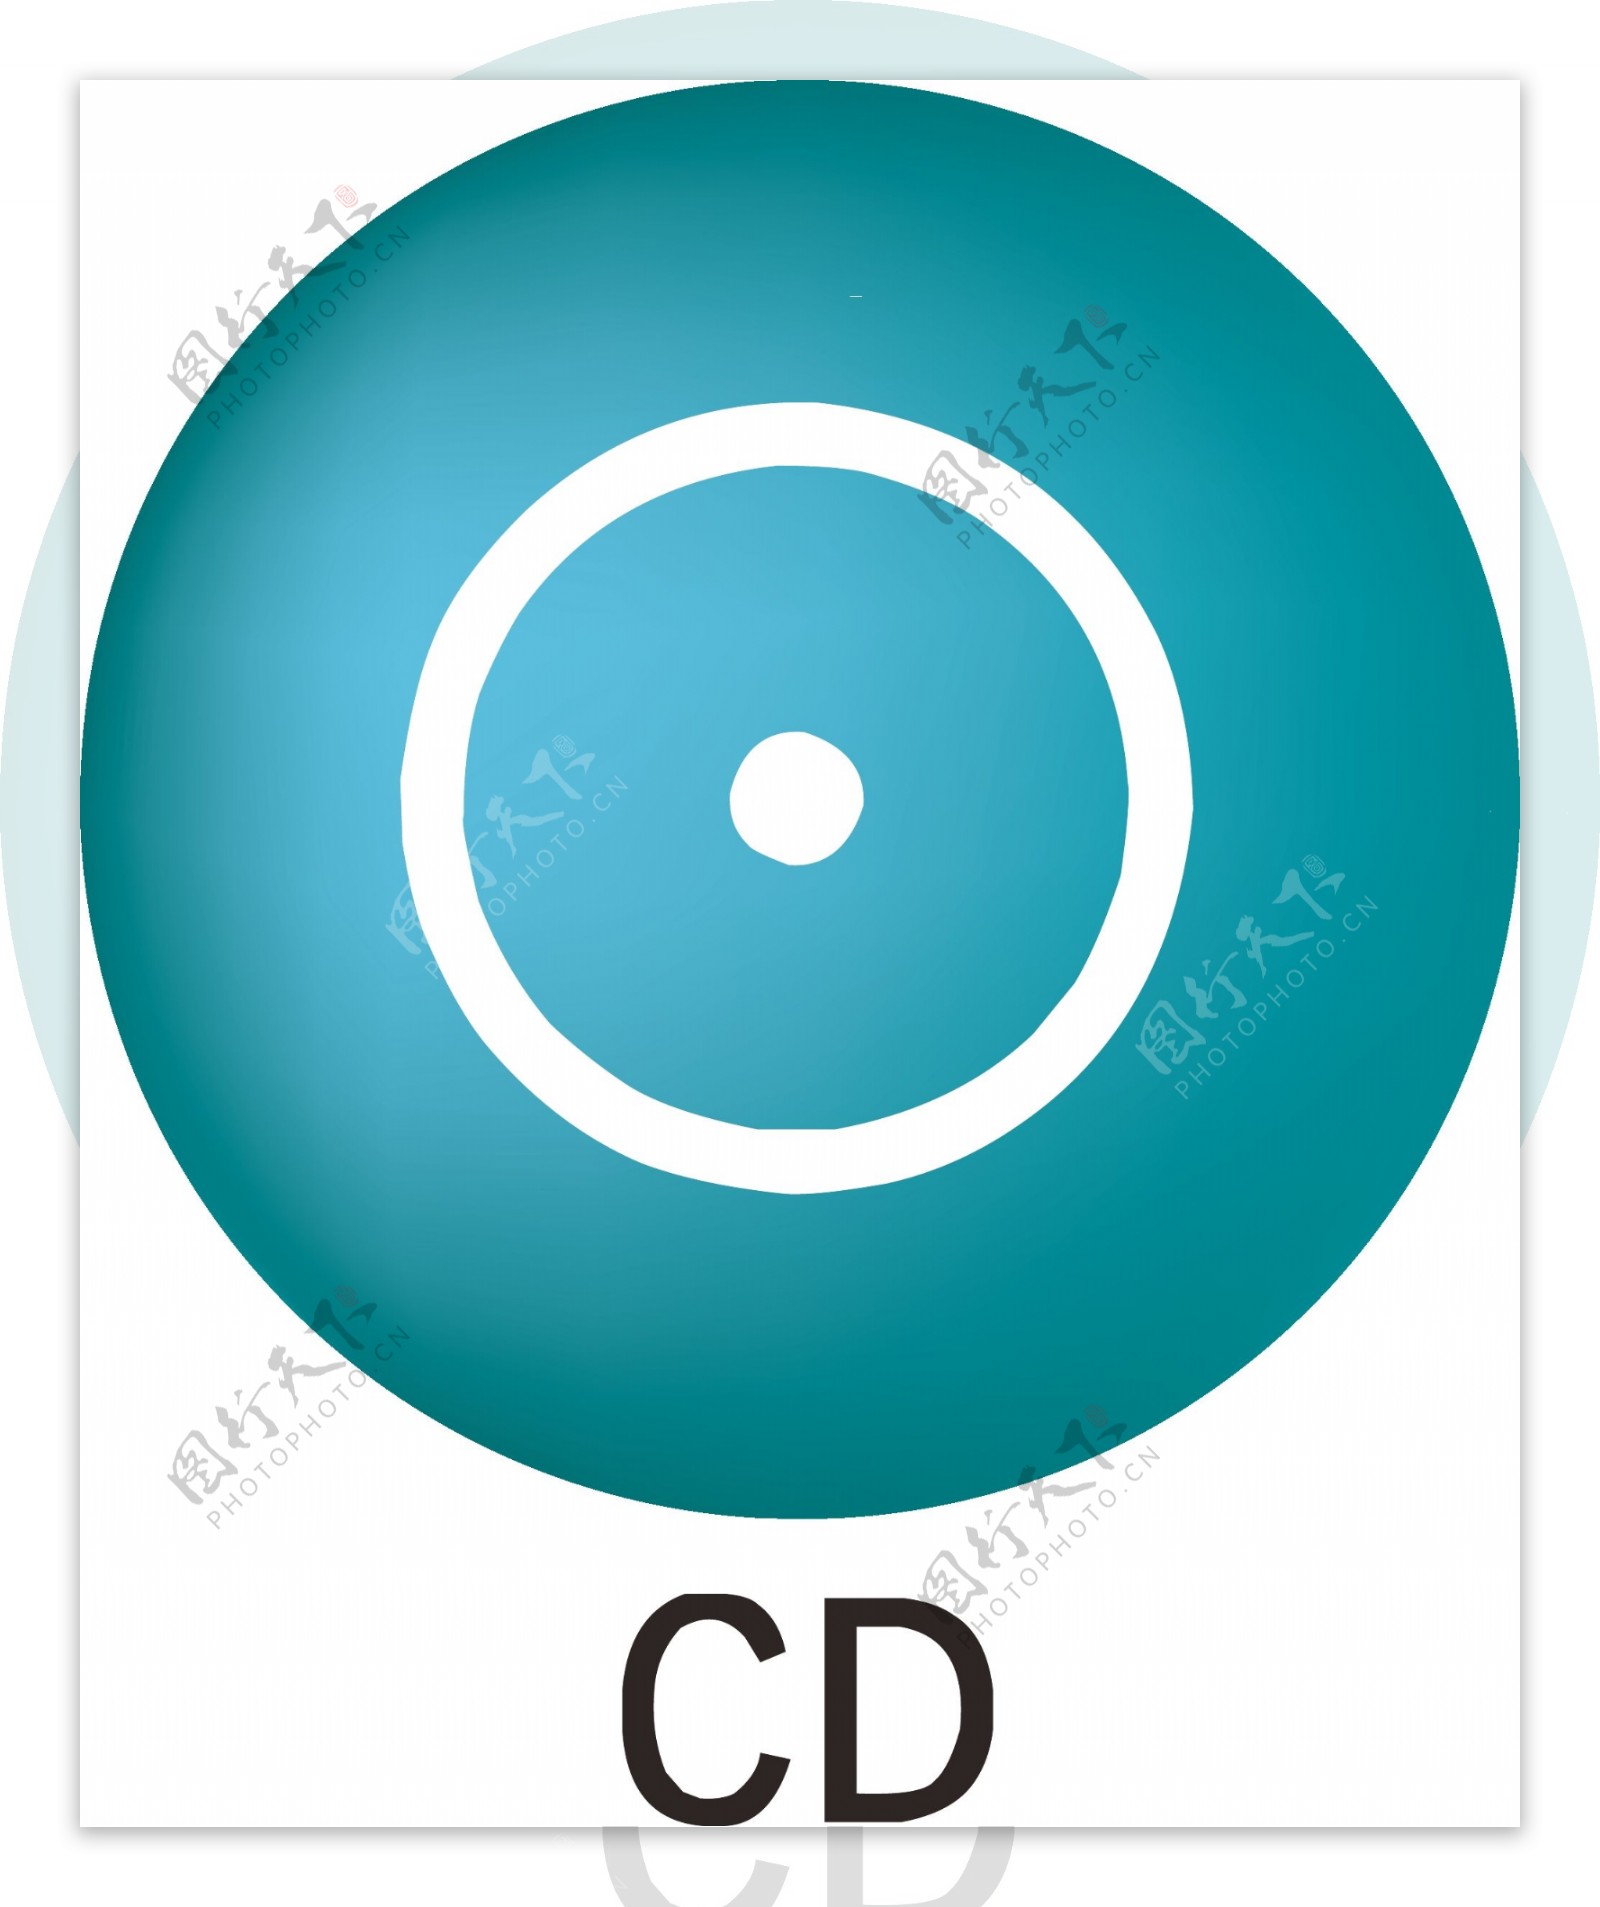 深蓝色CD图标素材